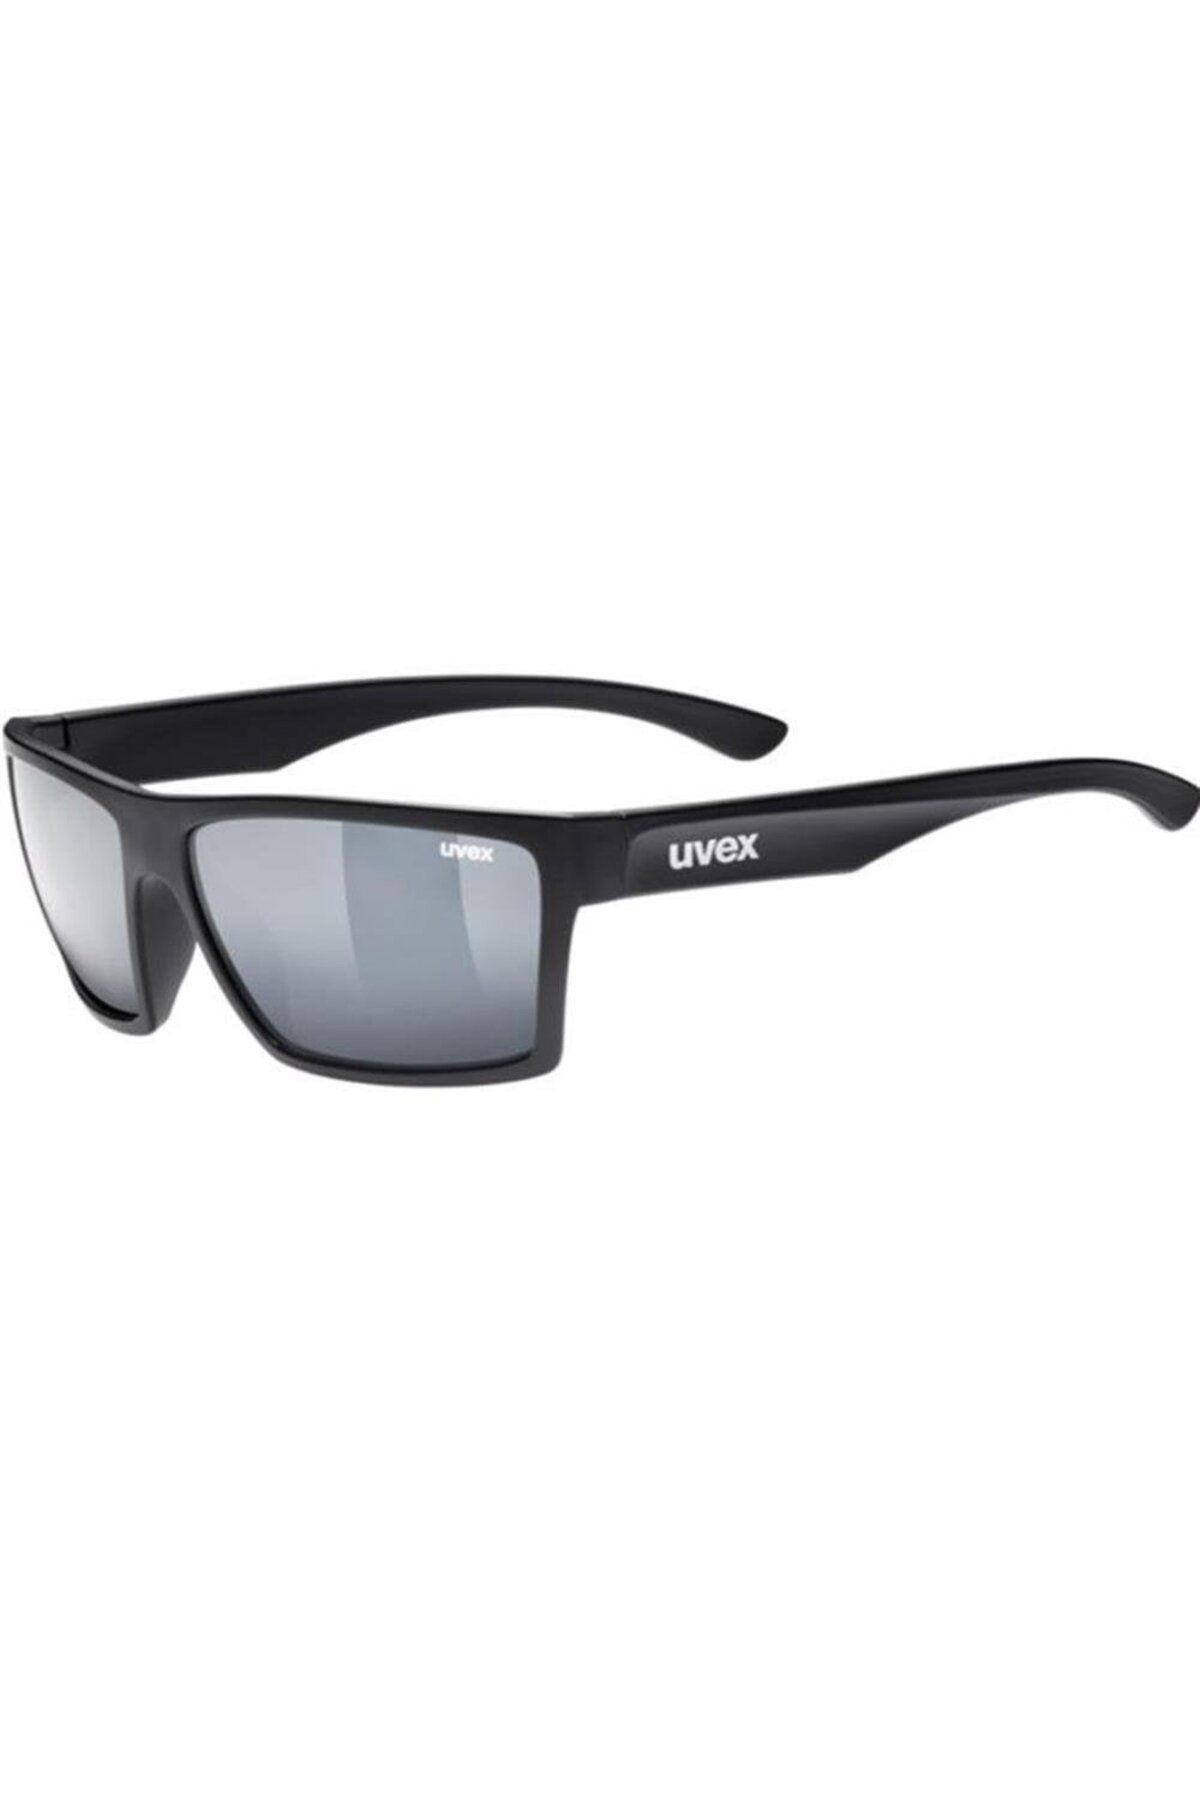 Uvex Lgl 29 Black Mat/mirror Silver Güneş Gözlüğü